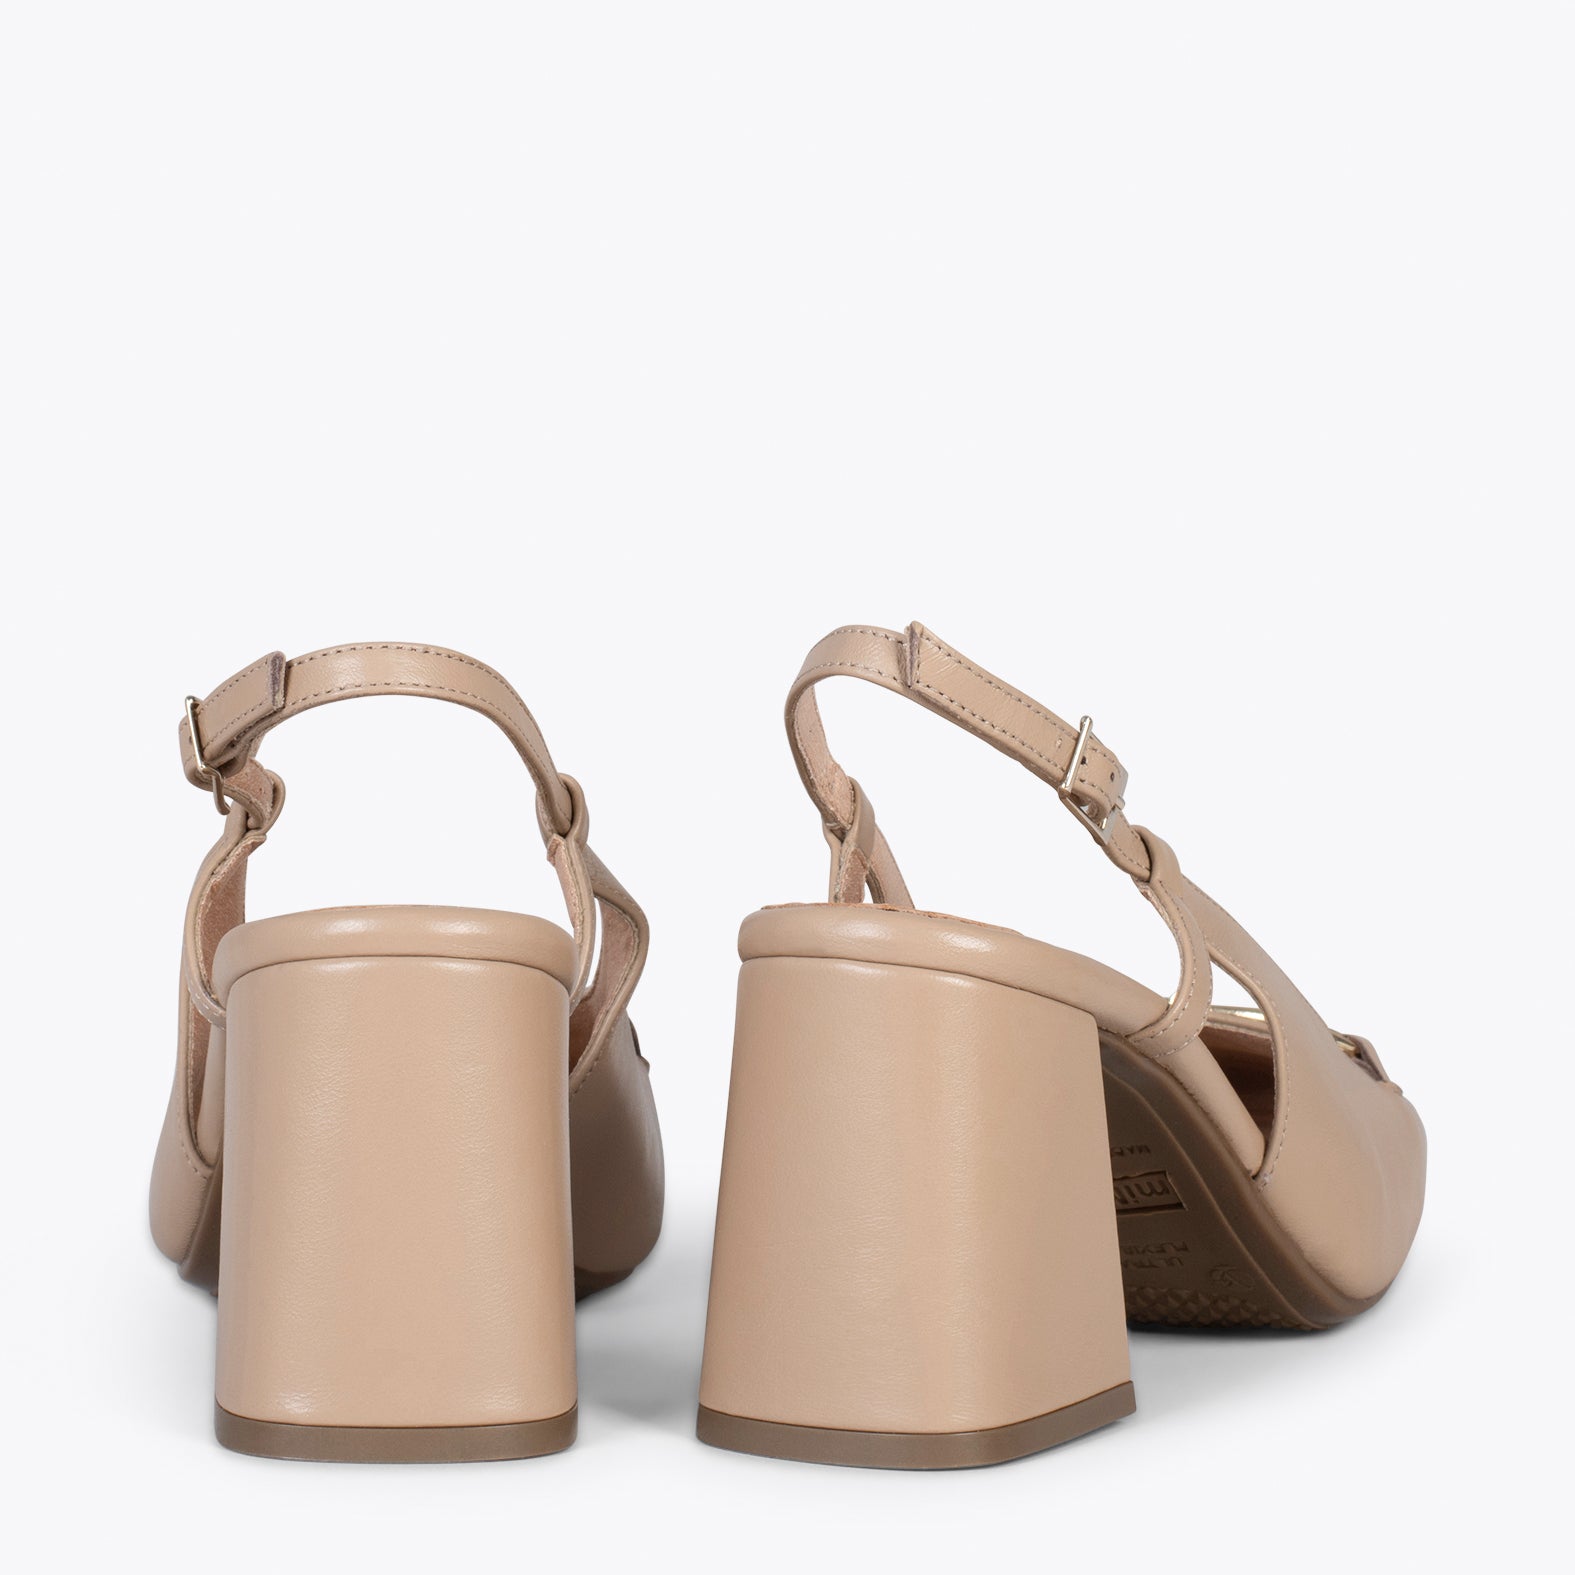 SLING-BACK MIA – BEIGE sling-back heeled moccasins